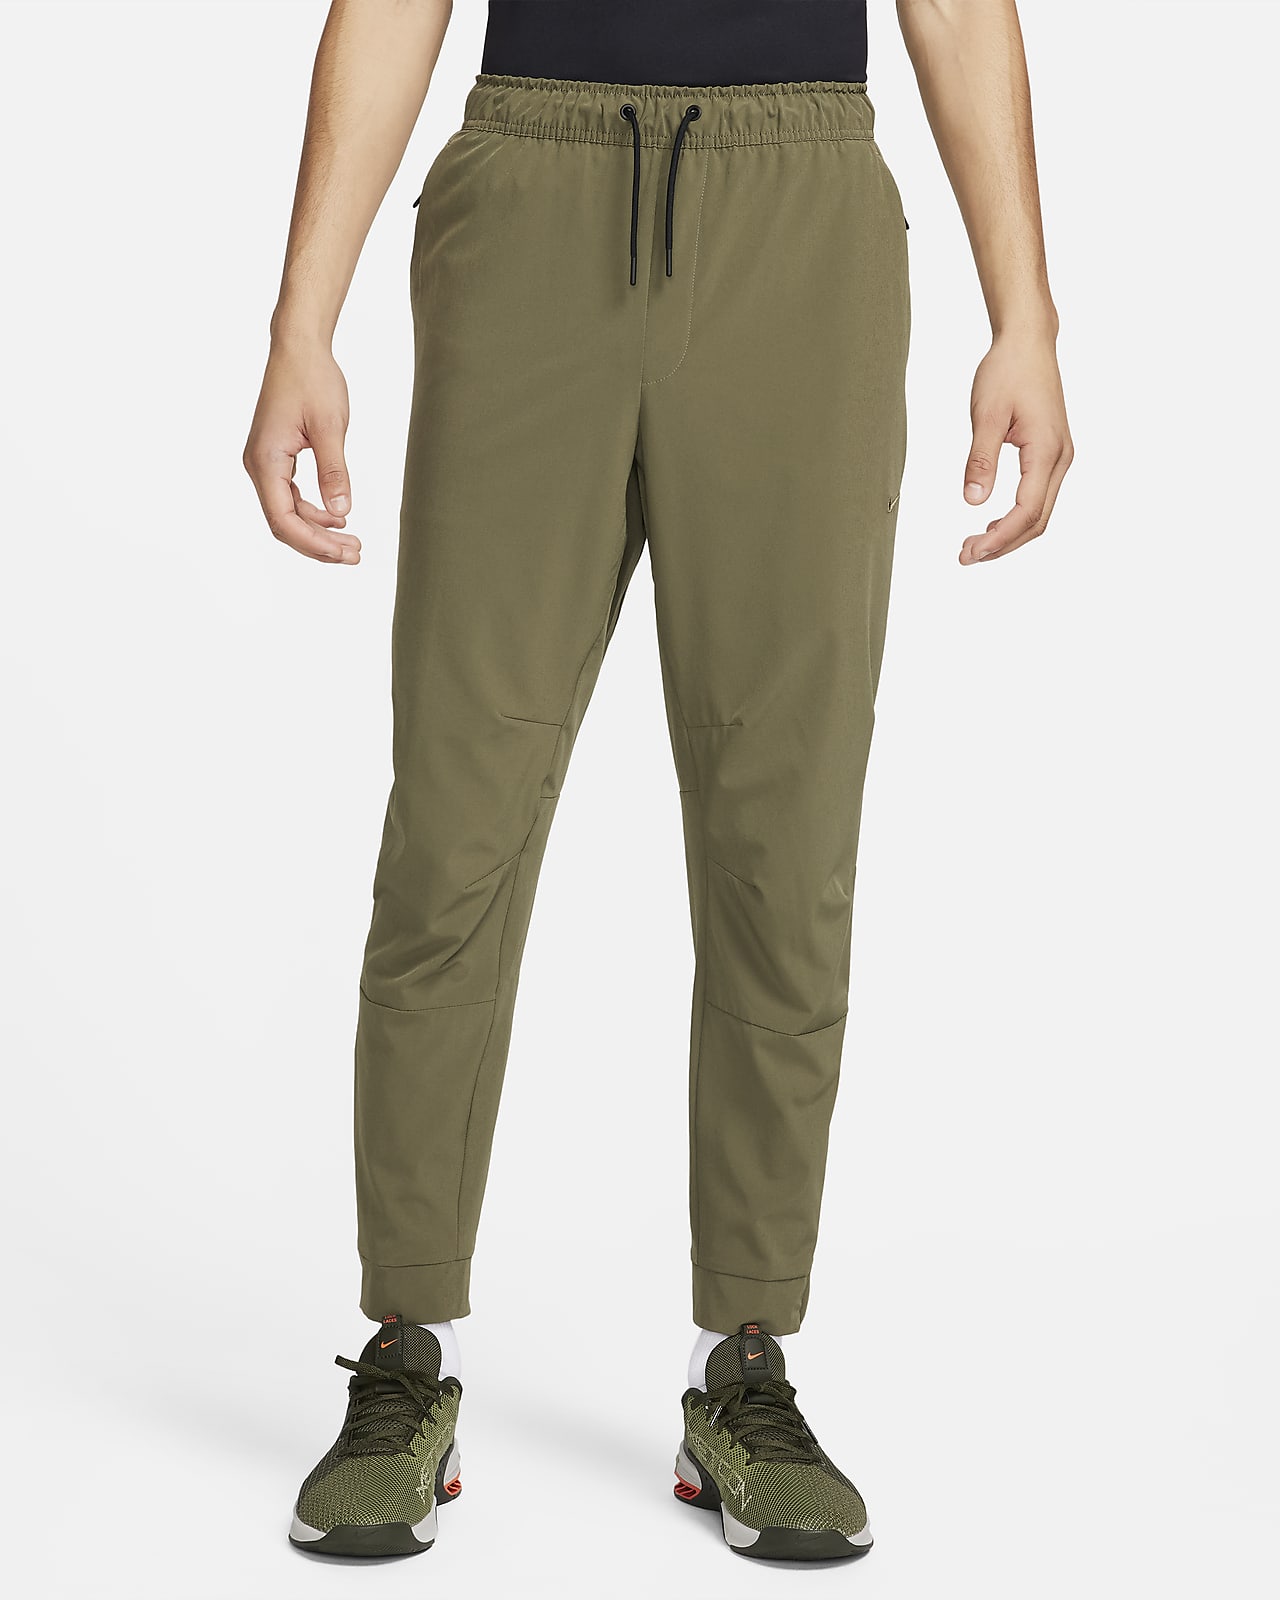 Pantalon avec ouvertures à zip Nike Dri-FIT Unlimited pour homme. Nike LU